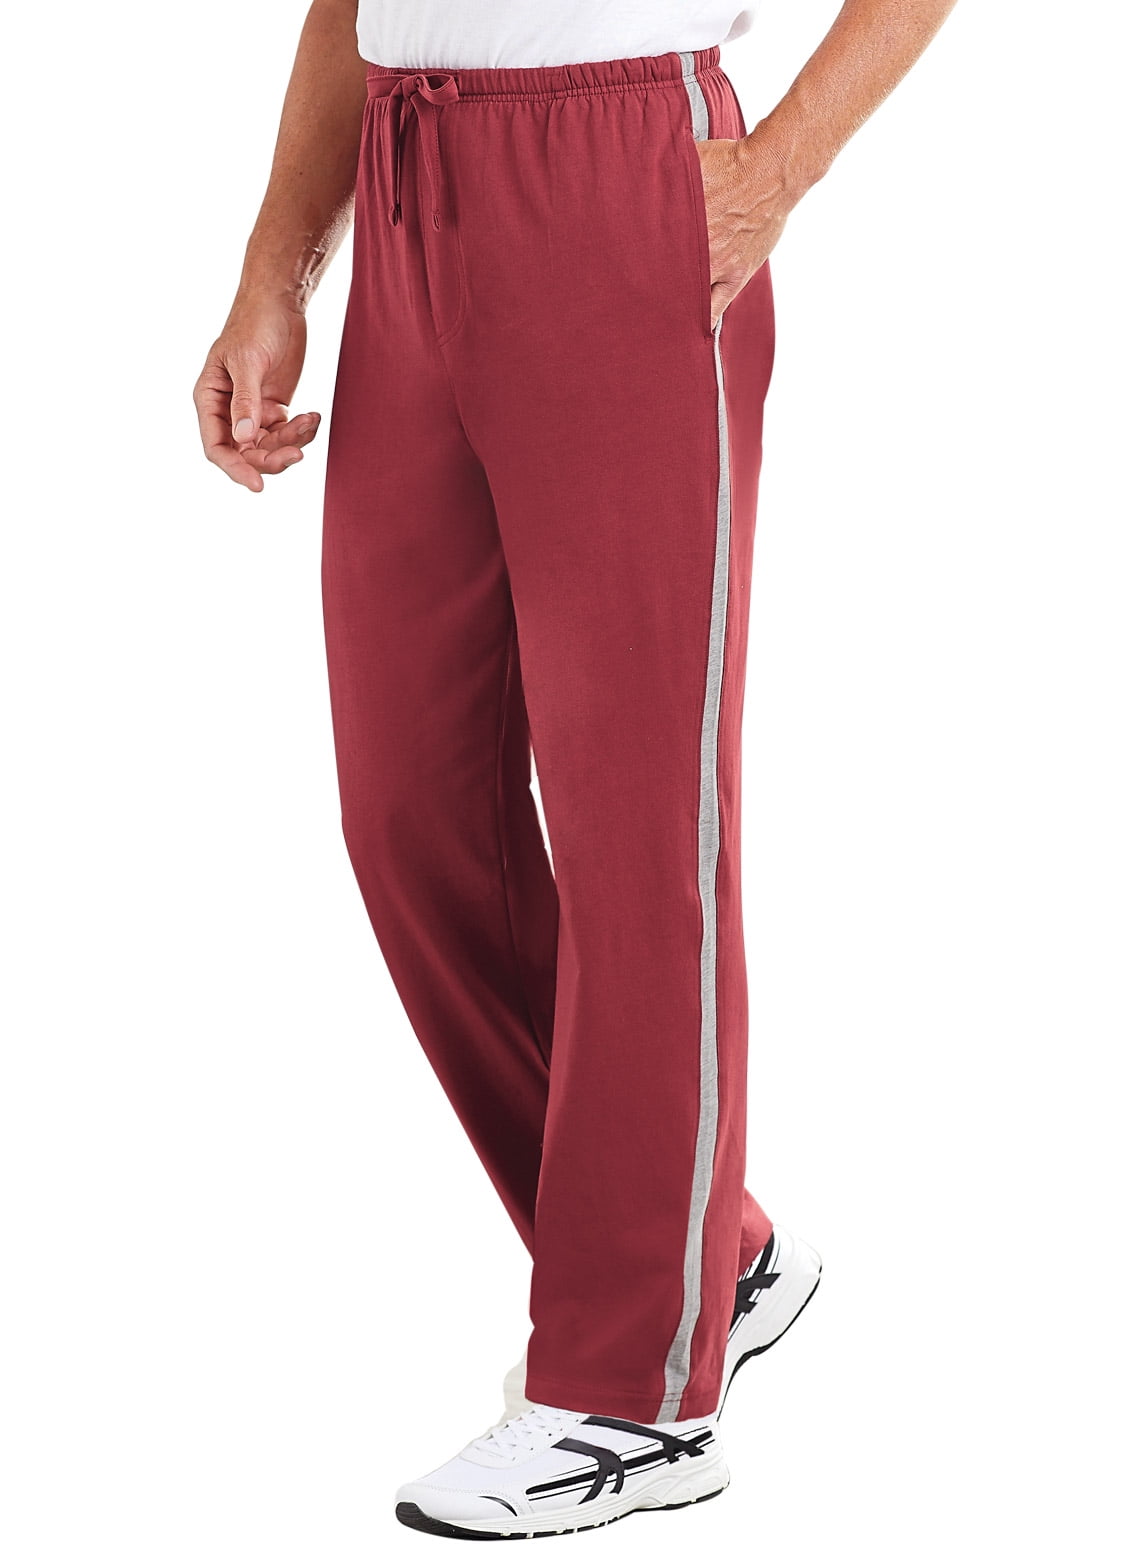 Men's Side-Stripe Pants by Freedom Fit Zone - Walmart.com - Walmart.com